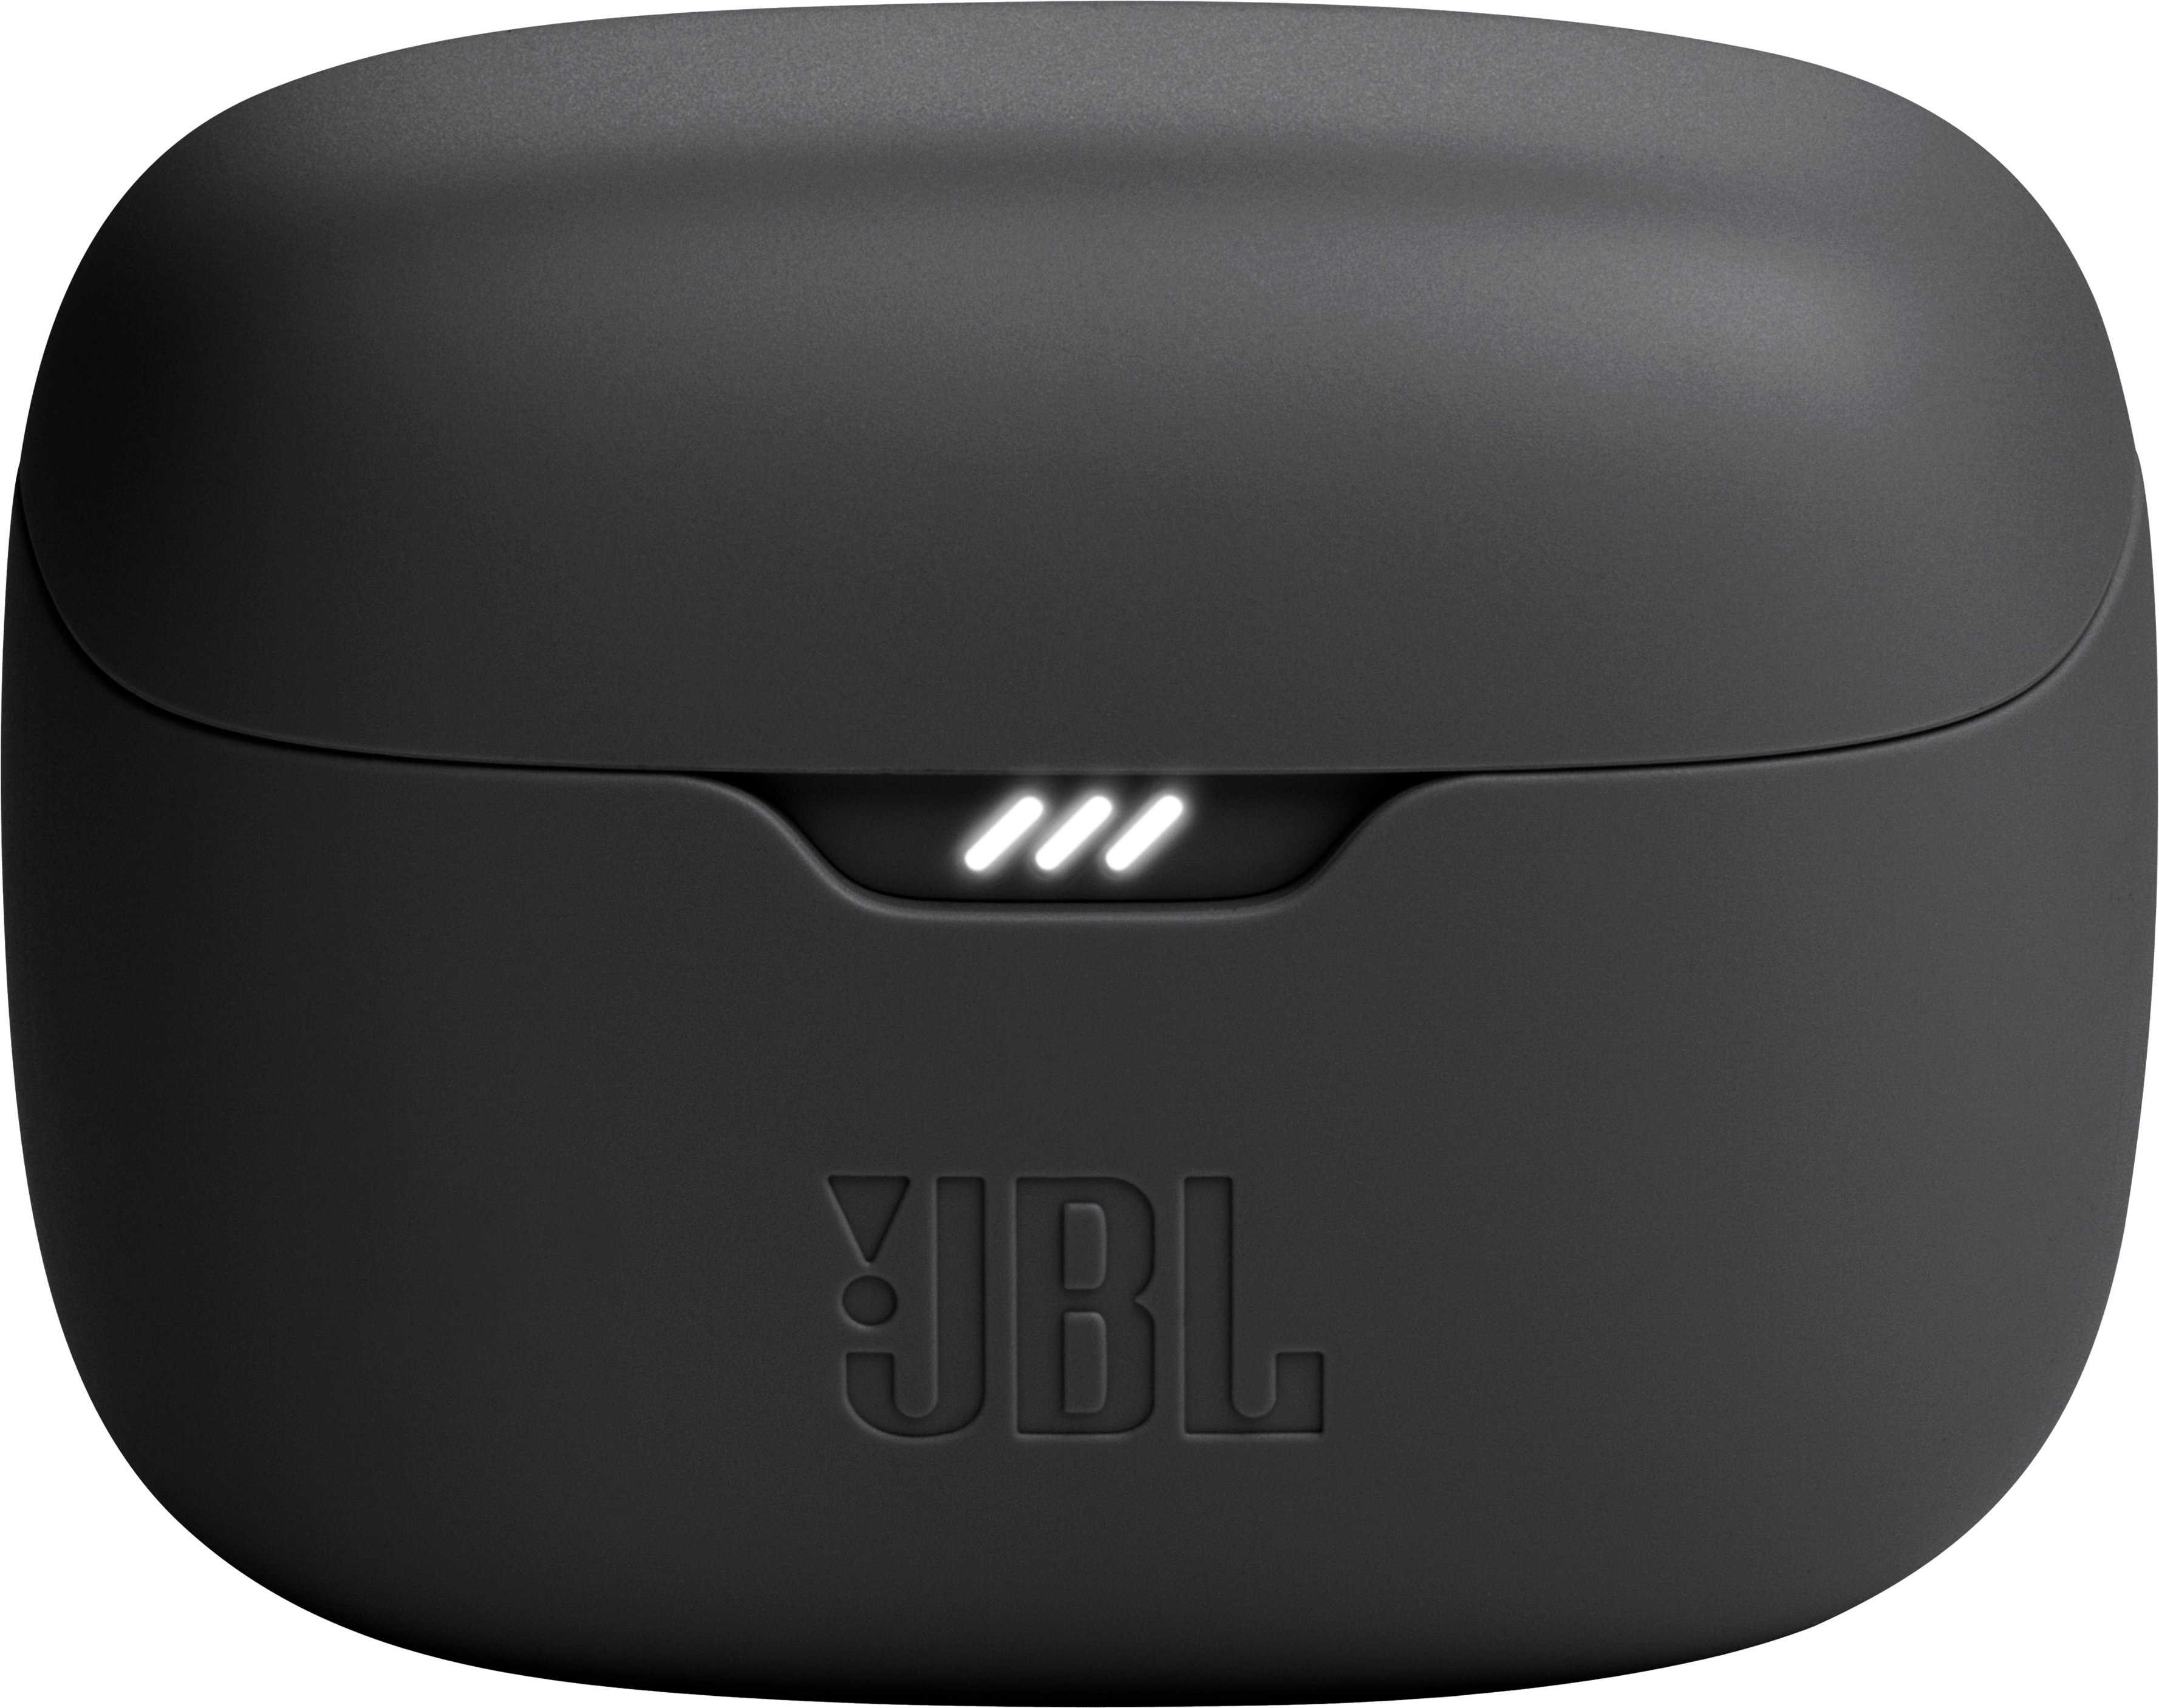 JBL Tune Buds True - JBLTBUDSBLKAM Best Buy Black Earbuds Noise Cancelling Wireless